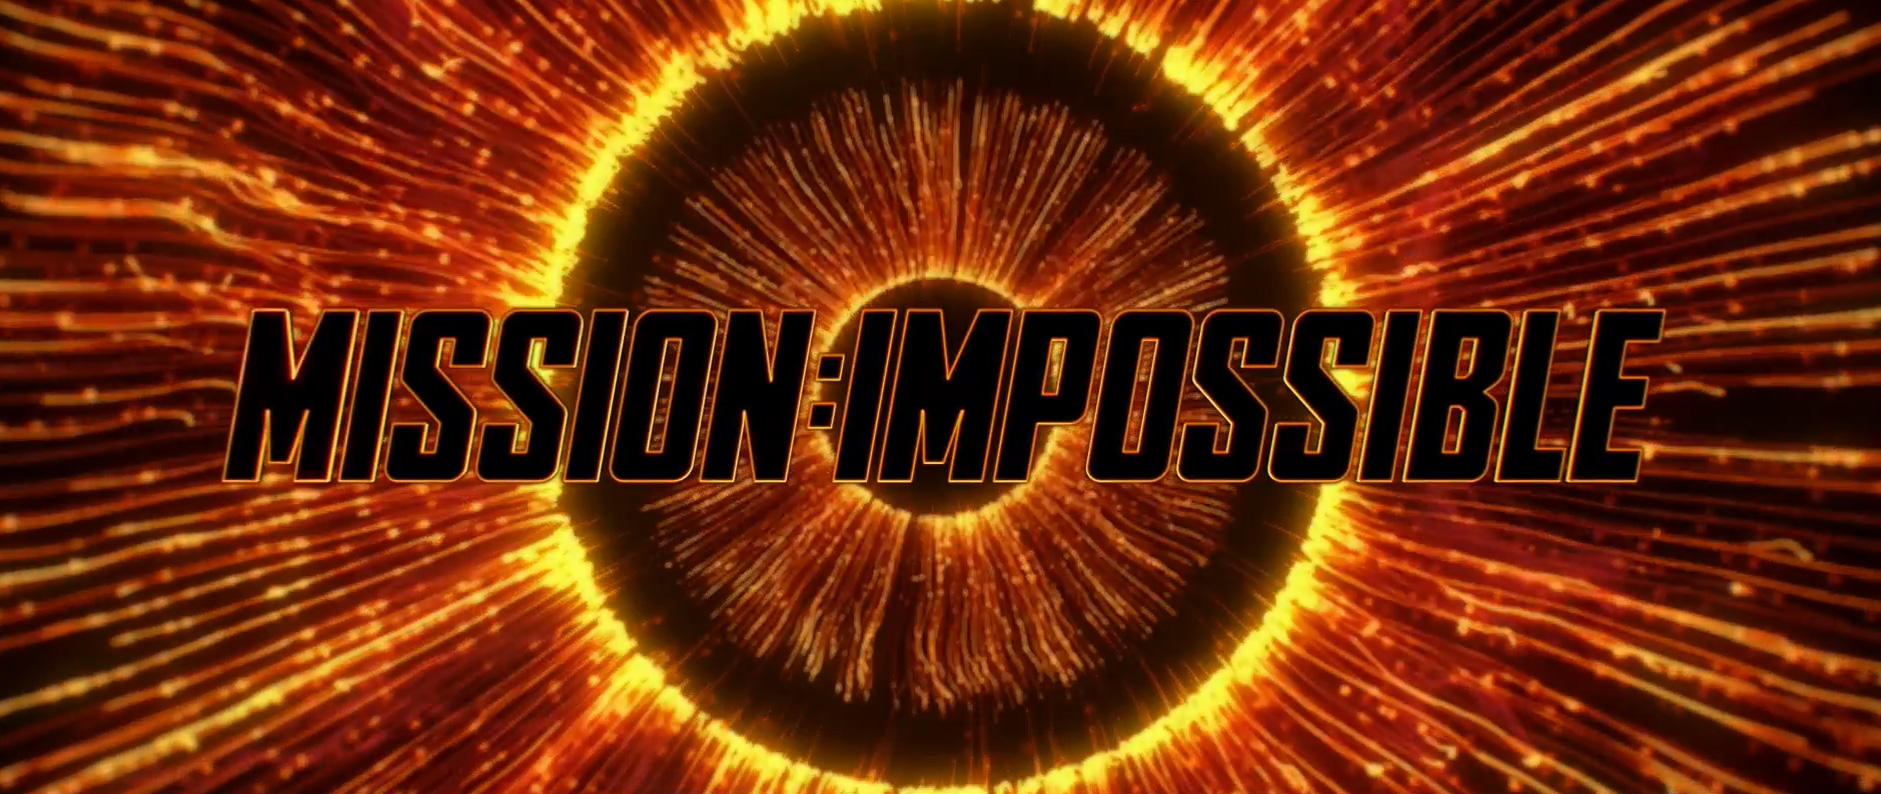 Mission Impossible - Dead Reckoning (Parte uno), scena da trailer 1